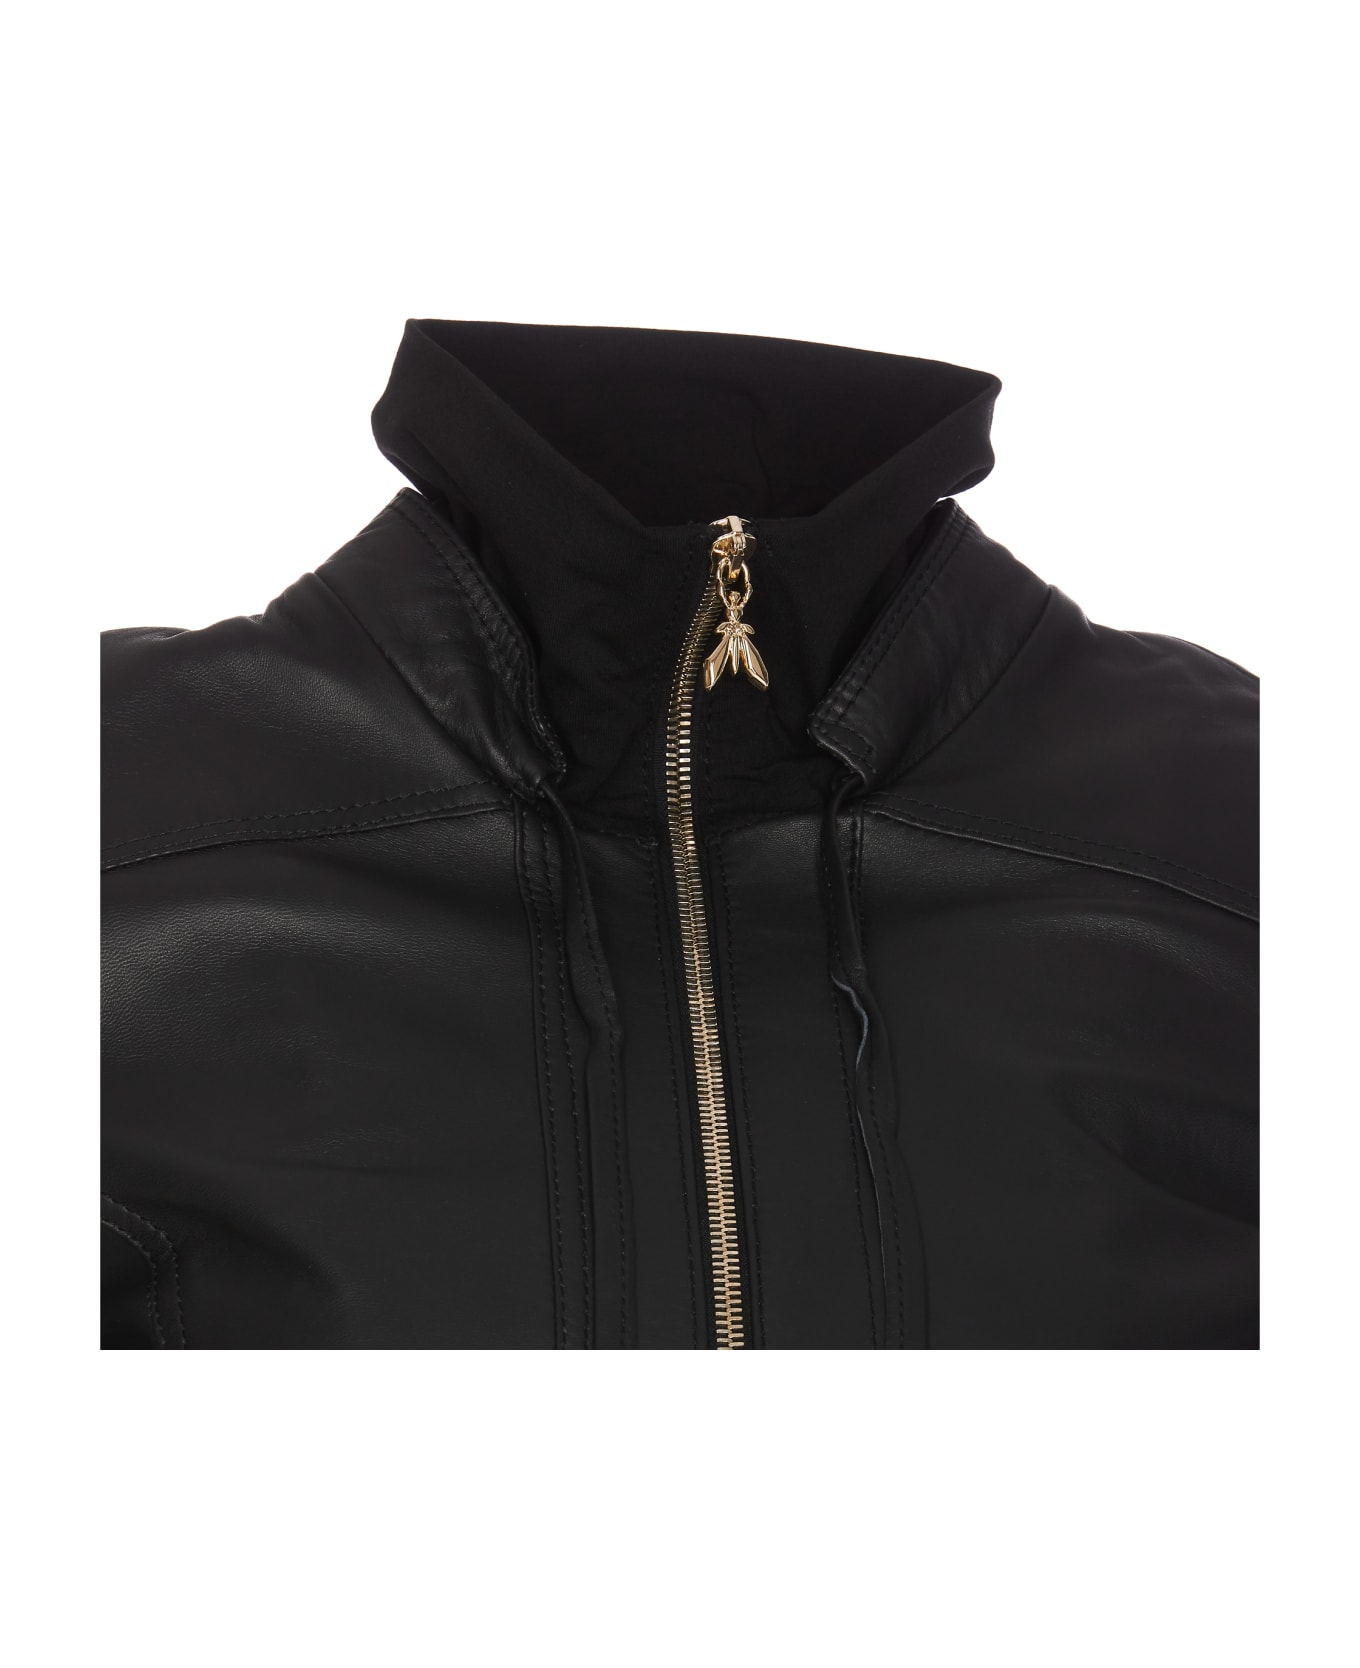 Patrizia Pepe Leather Jacket - Black